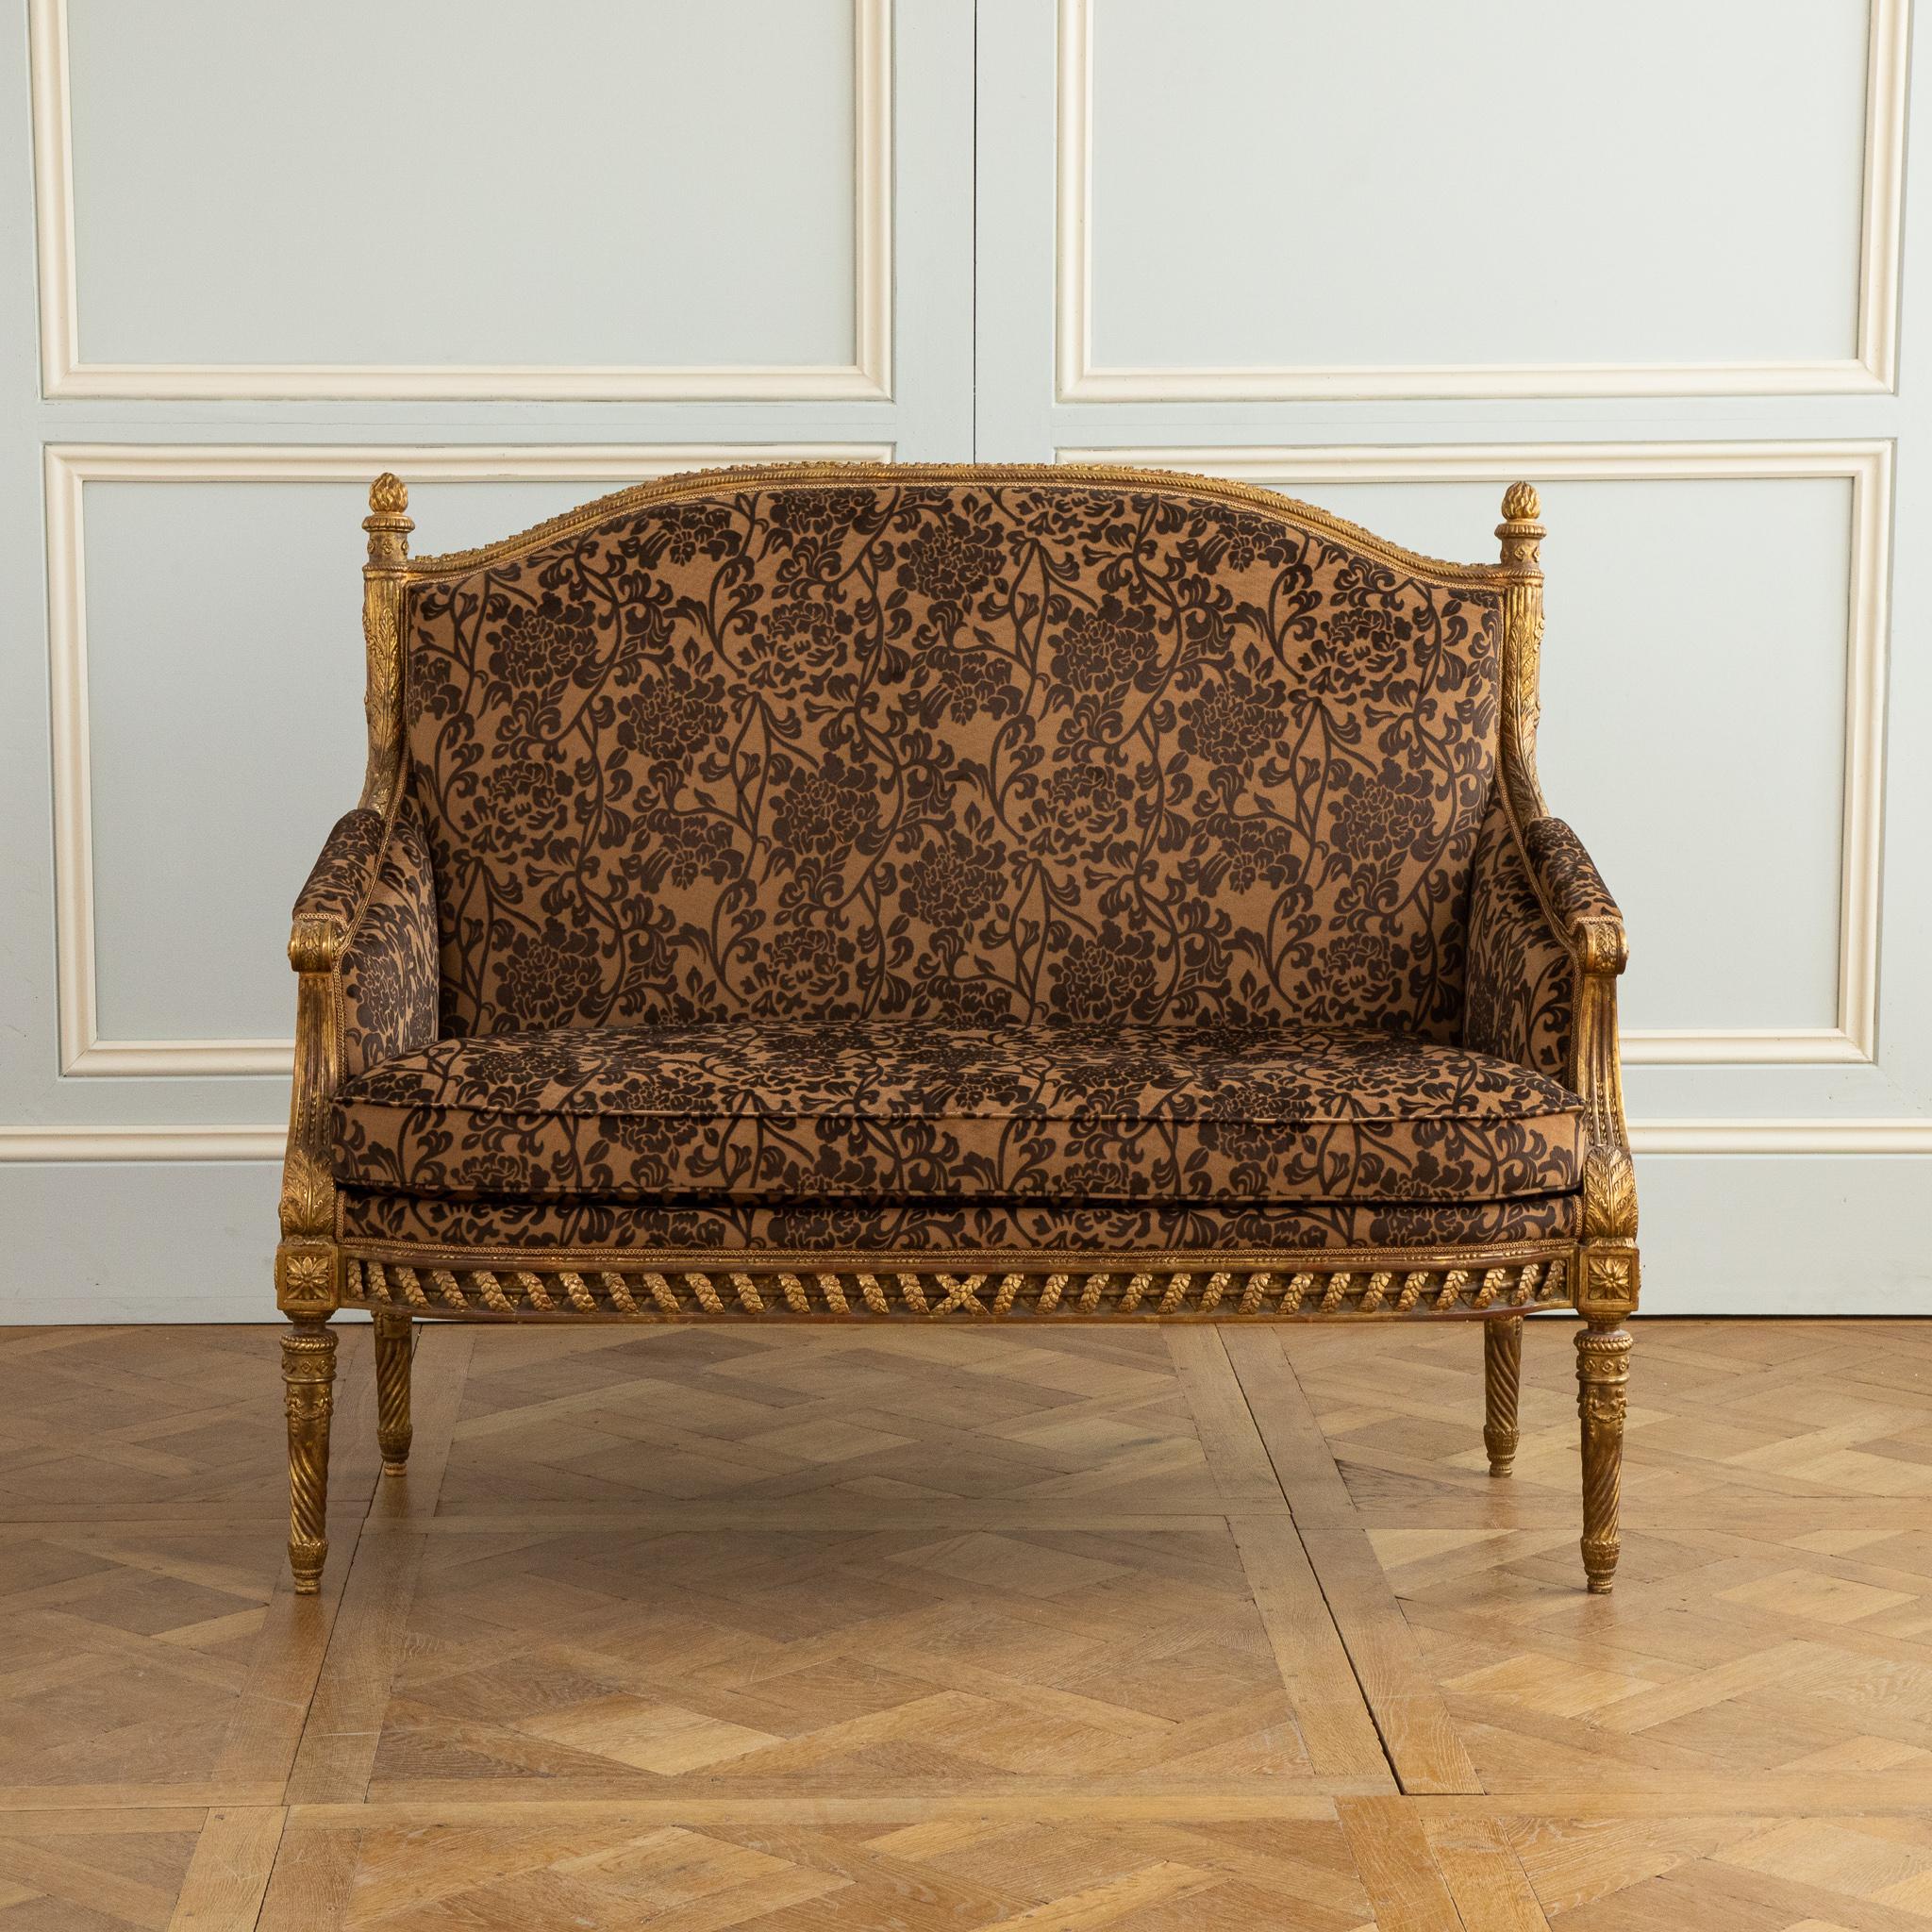 Ein Zweisitzer-Sofa im Louis-XVI-Stil mit exquisiten Schnitzereien von den besten Schnitzern von LML. Das Stück ist eine Replik eines Originals; es wurde nach den höchsten Standards hergestellt und mit einer handvergoldeten Patina versehen, die ein